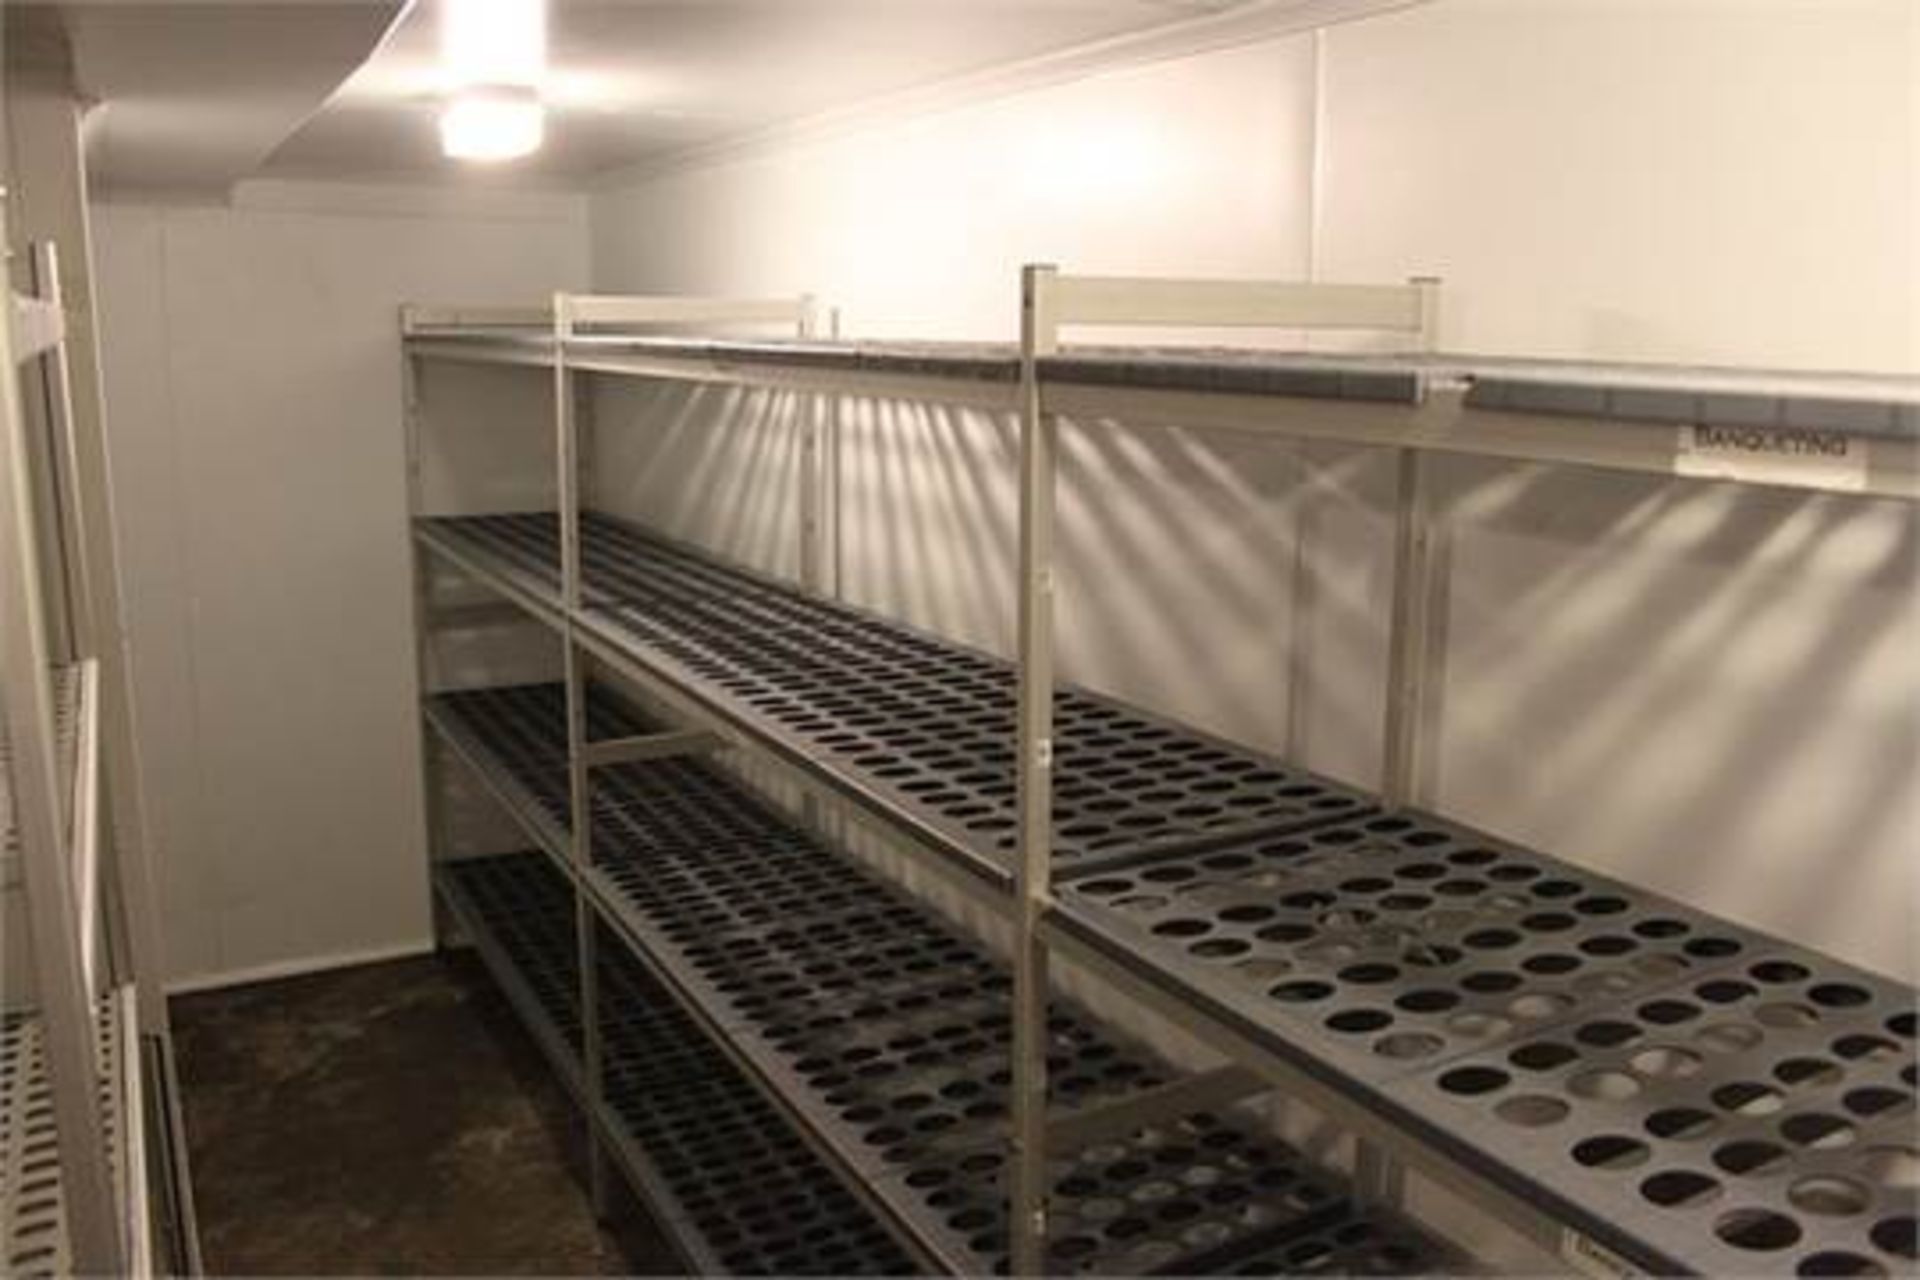 Large quantity of freezer racking